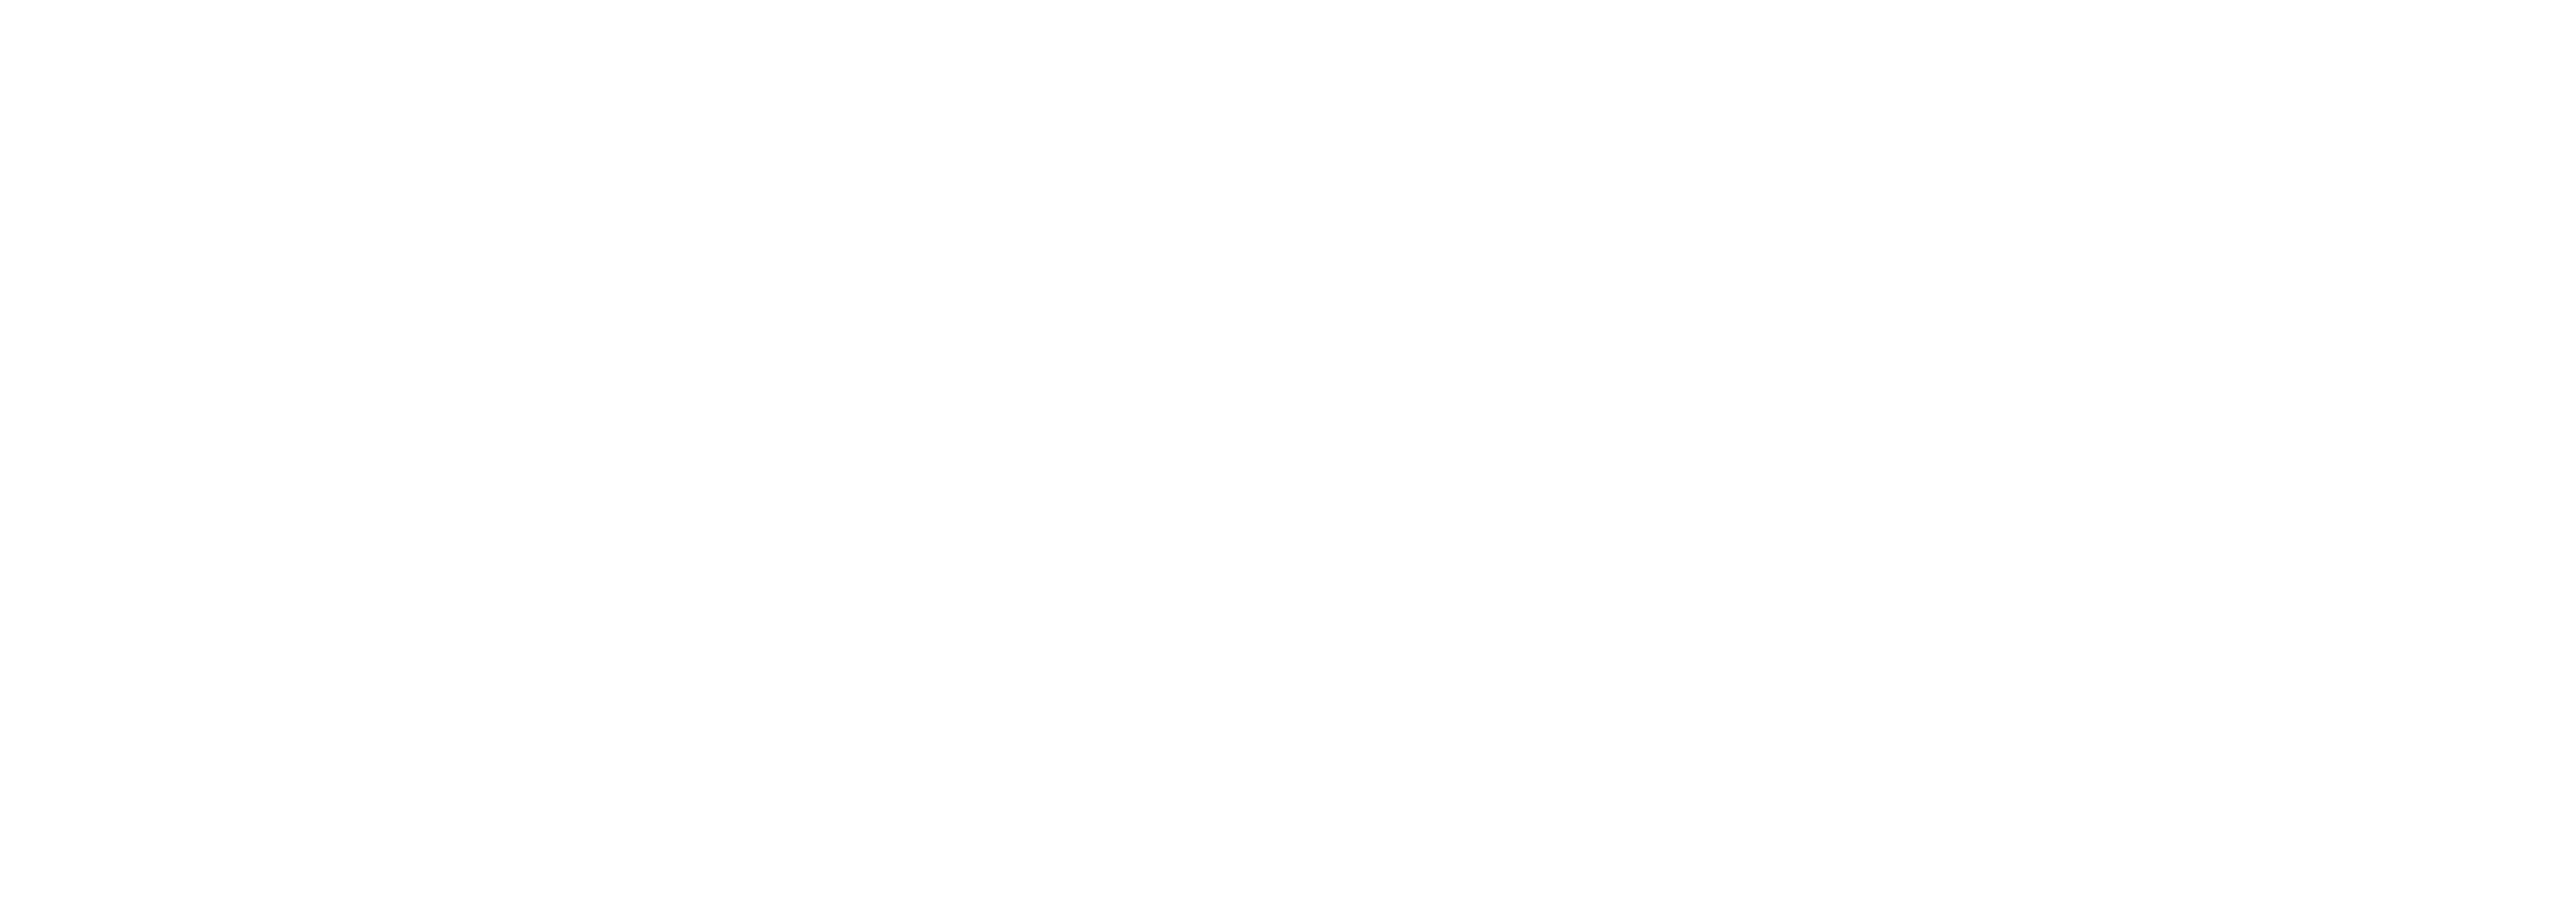 001-merken/avek/001-logos/avek-logo.png